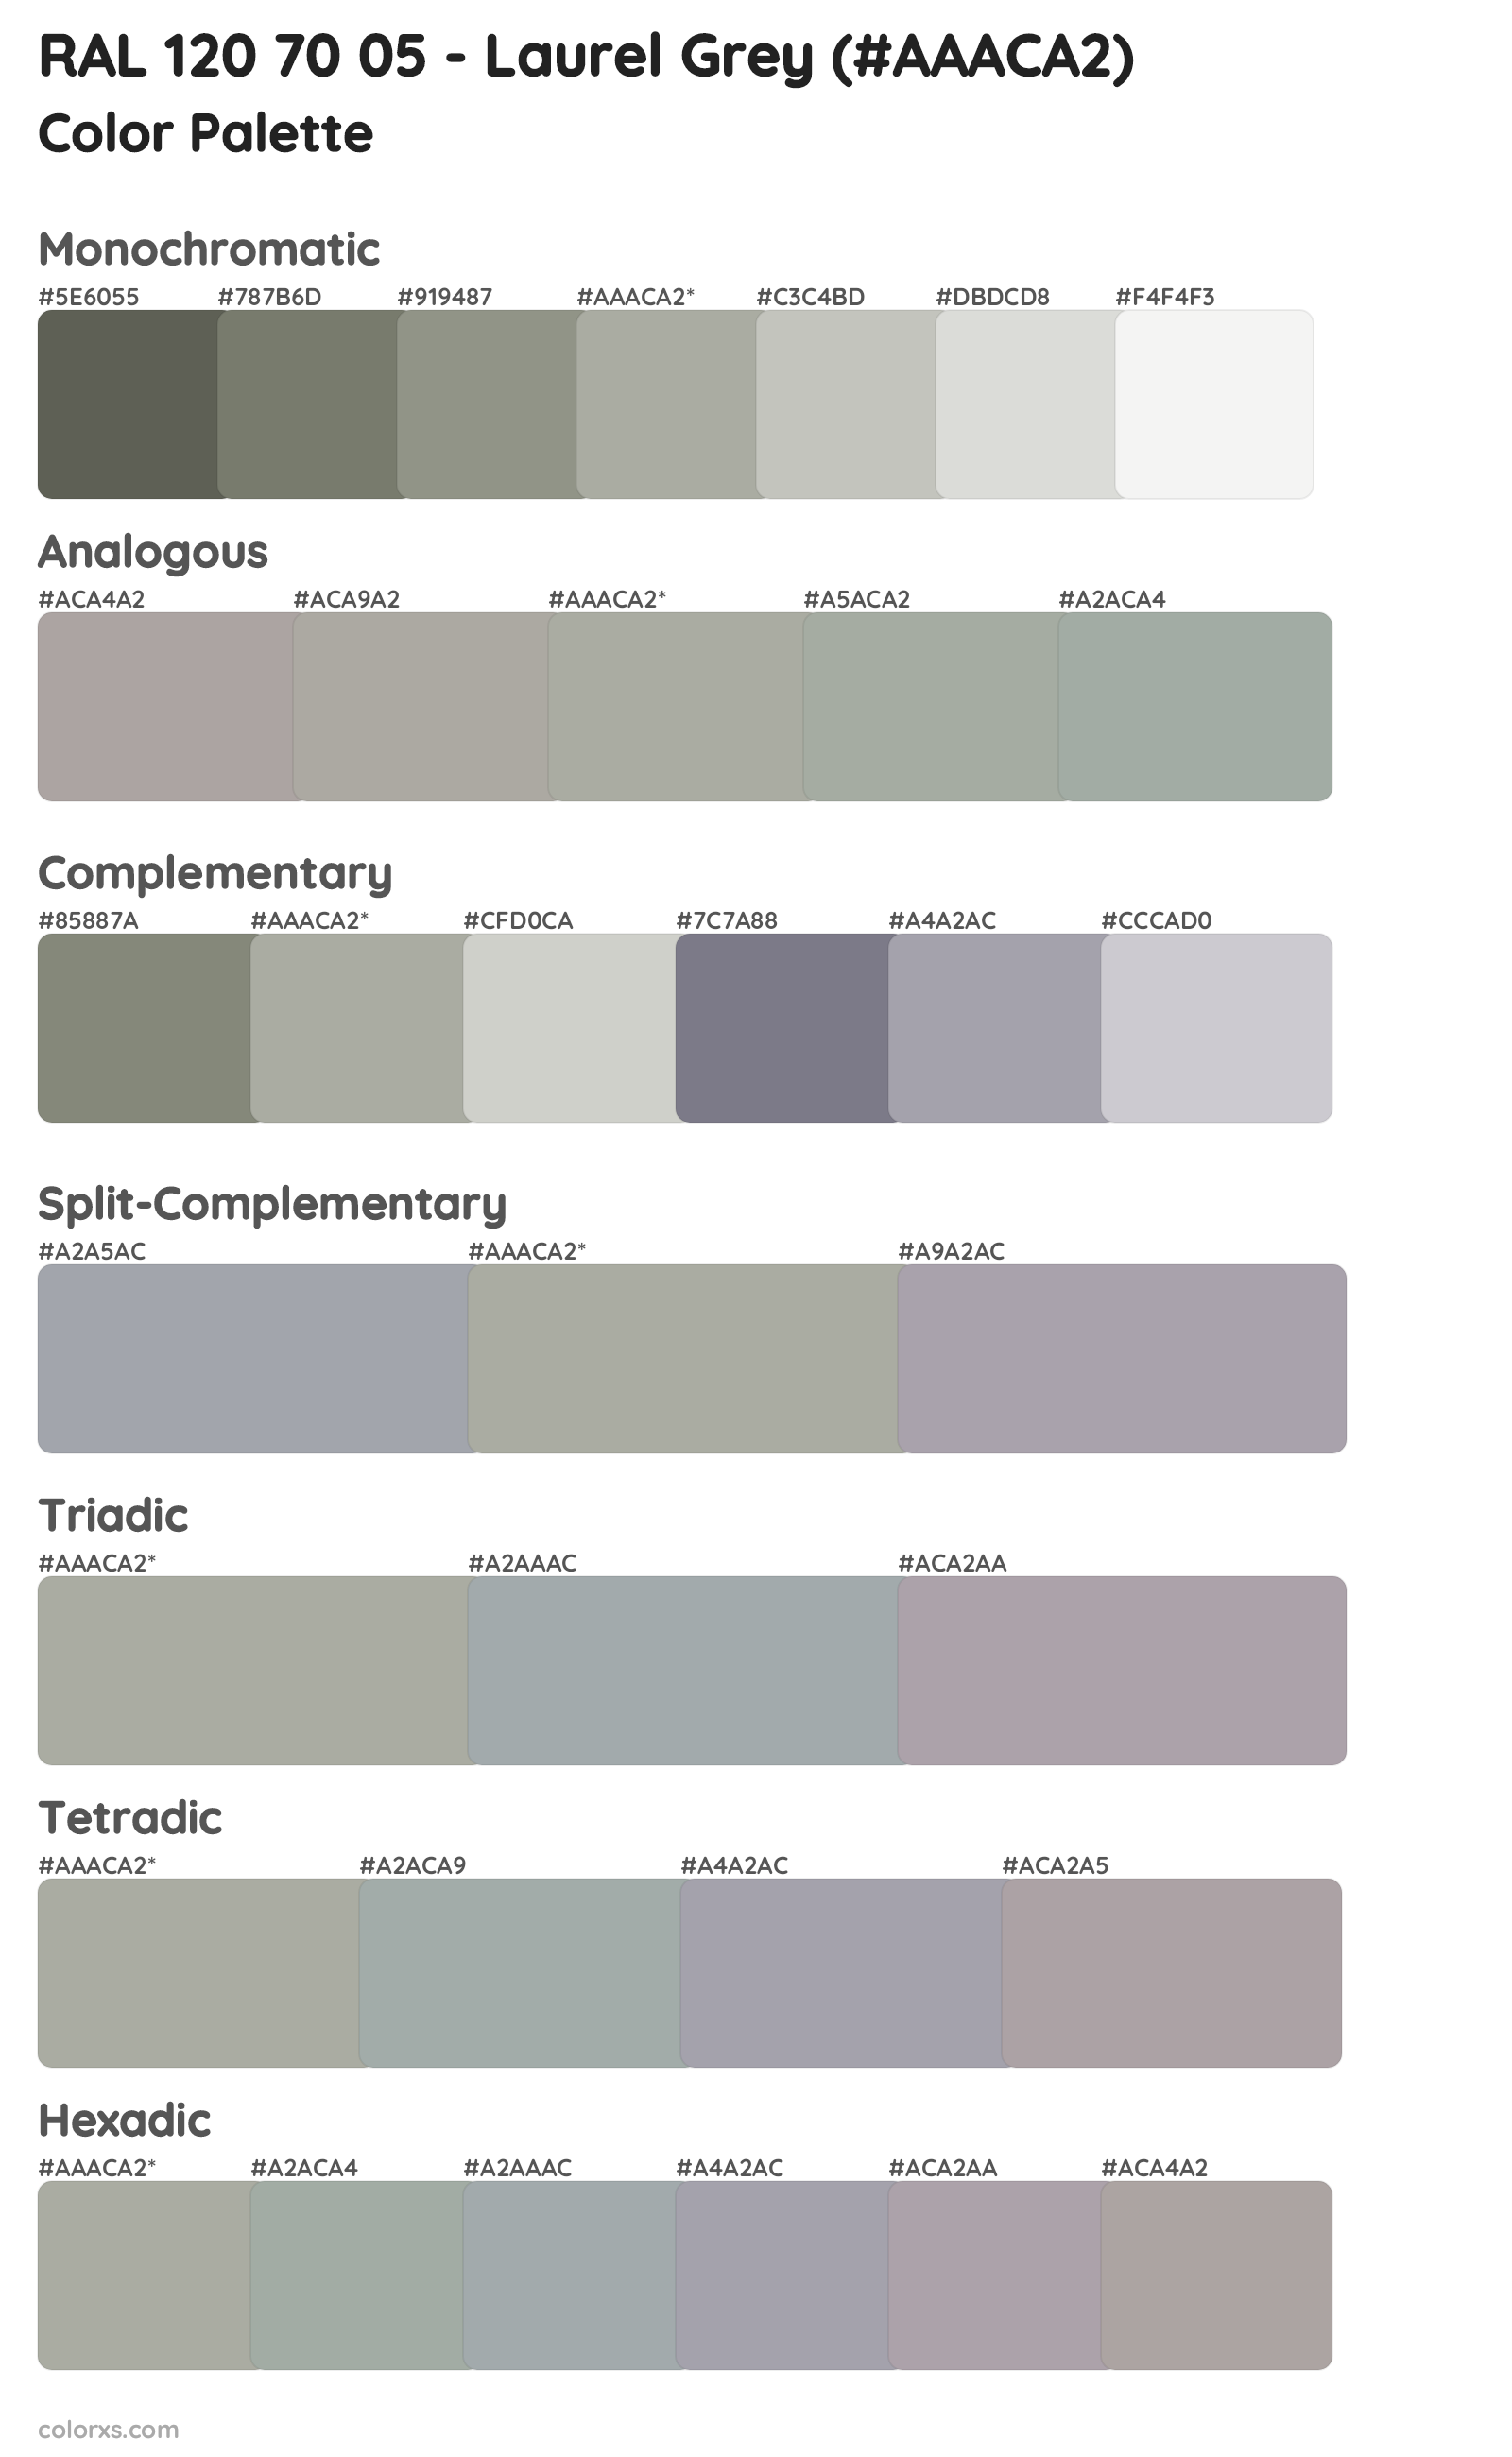 RAL 120 70 05 - Laurel Grey Color Scheme Palettes